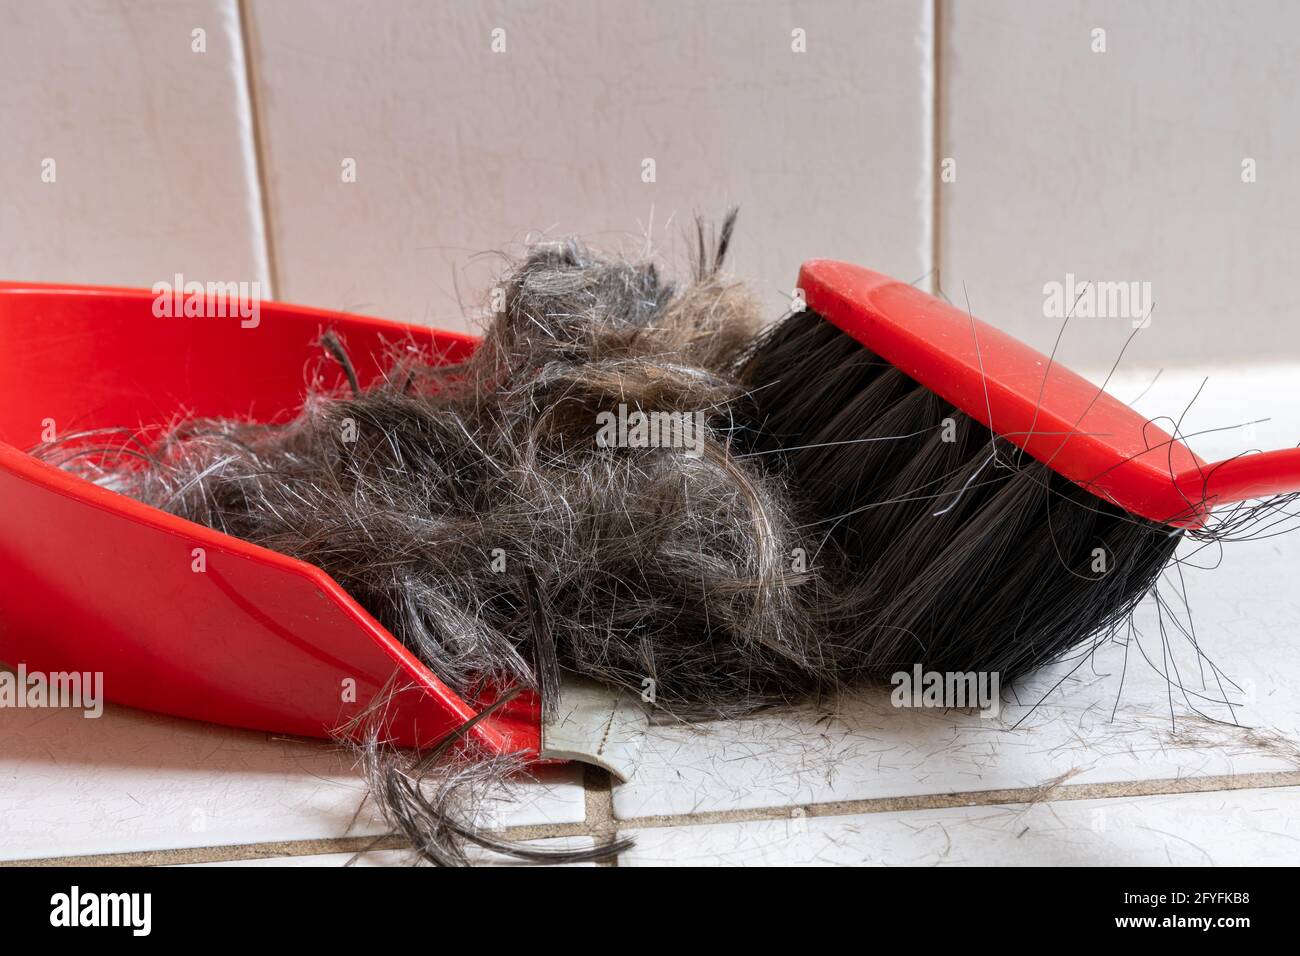 Bürsten Sie Besen mit Kehrschaufel, um menschliches Haar zu reinigen Stockfoto